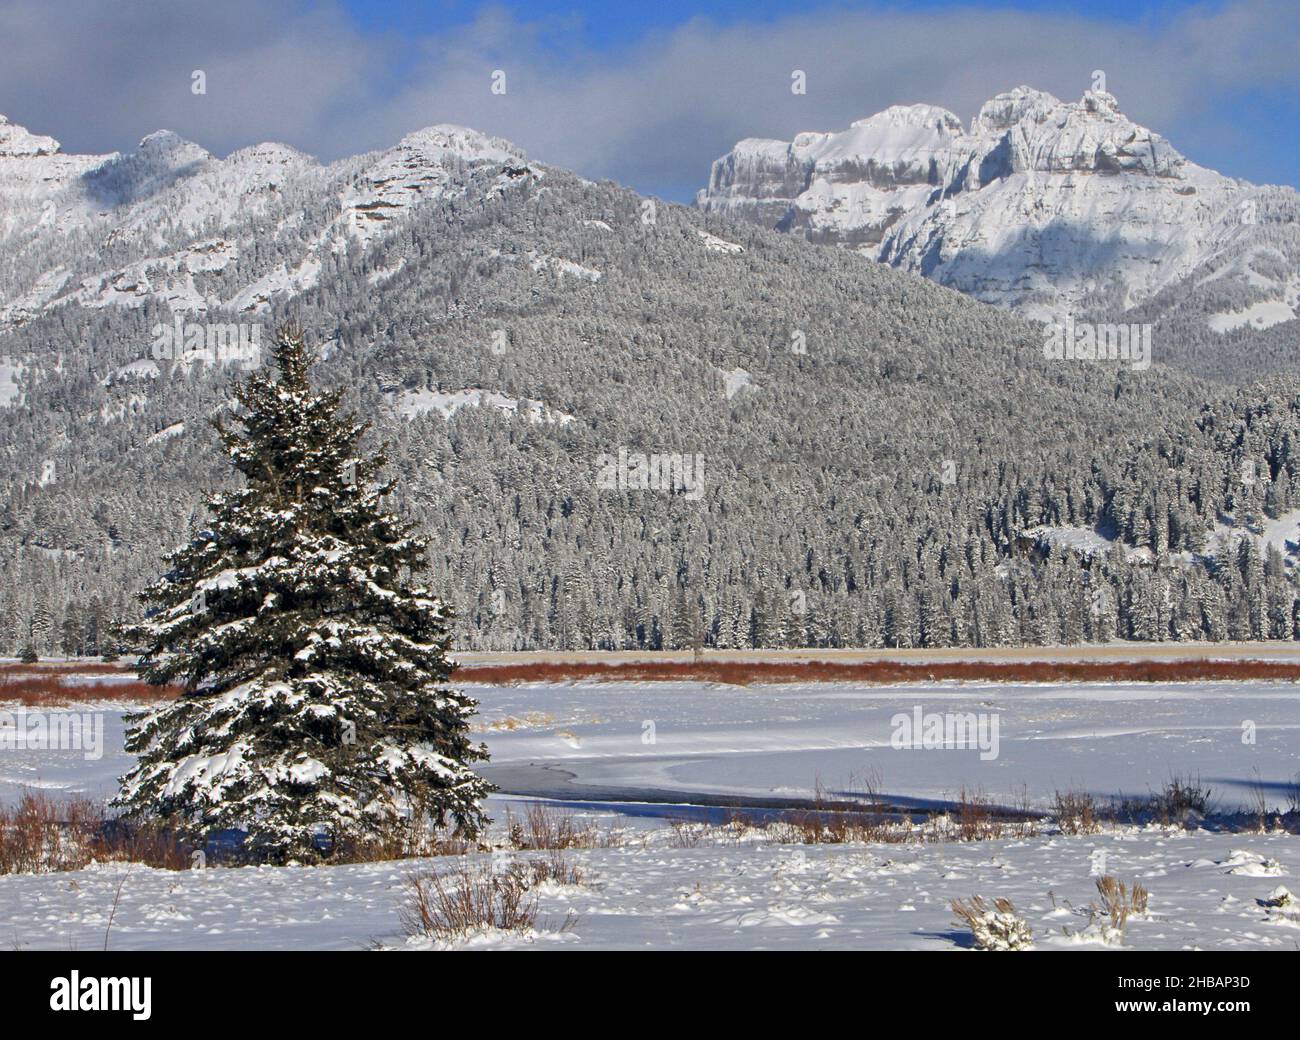 Round-Parrim und Amphitheatre-Berg., Yellowstone-Nationalpark. Eine digital optimierte Version eines NPS-Bildes, Quelle: NPS/J. Peaco Stockfoto